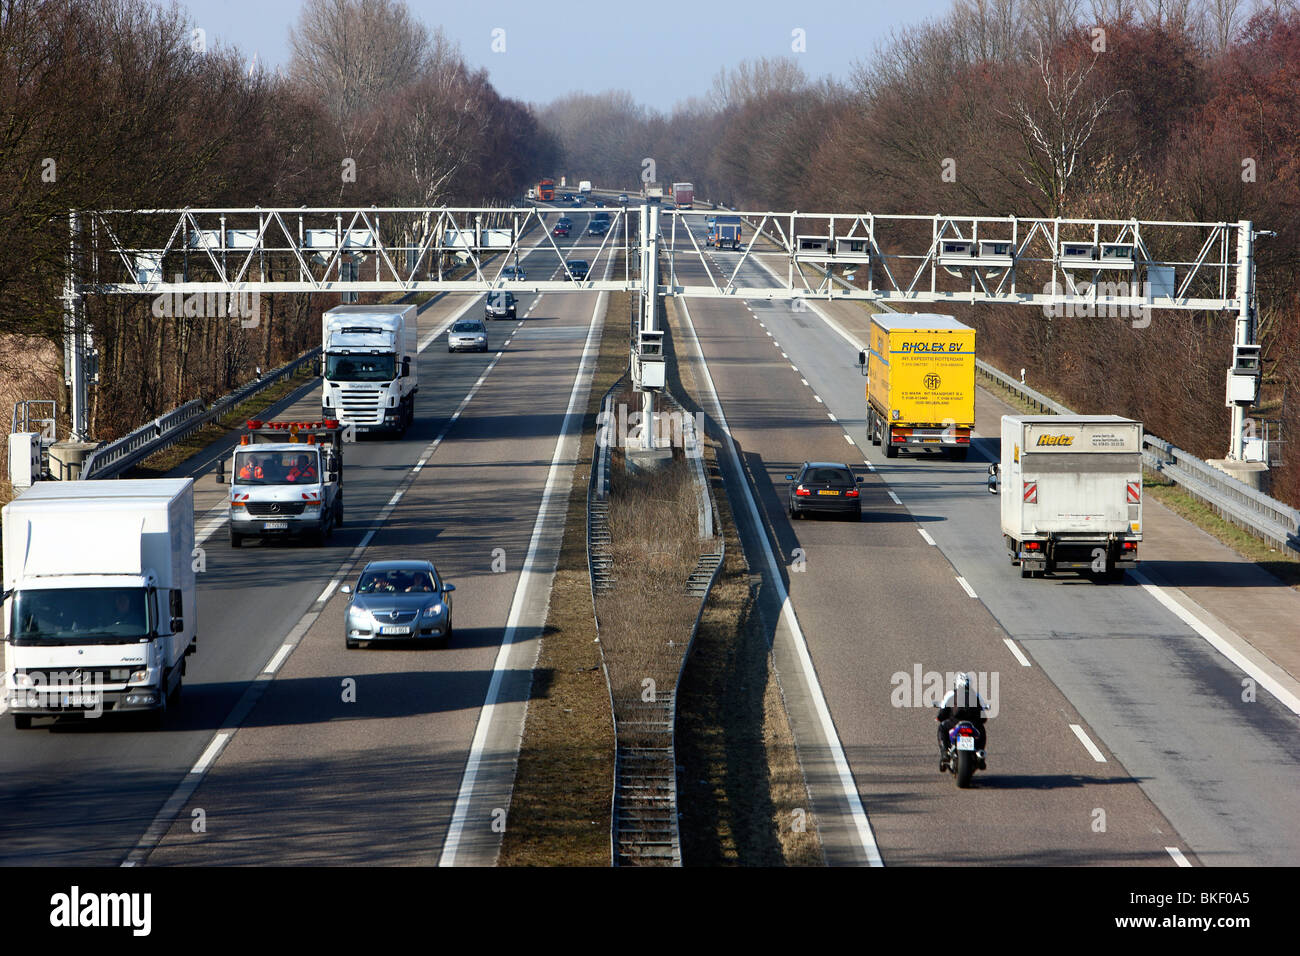 Ponte a pedaggio in autostrada in Germania. I rivelatori in Ponte a registrare tutti i camion che devono pagare pedaggio sulle autostrade tedesche. Foto Stock